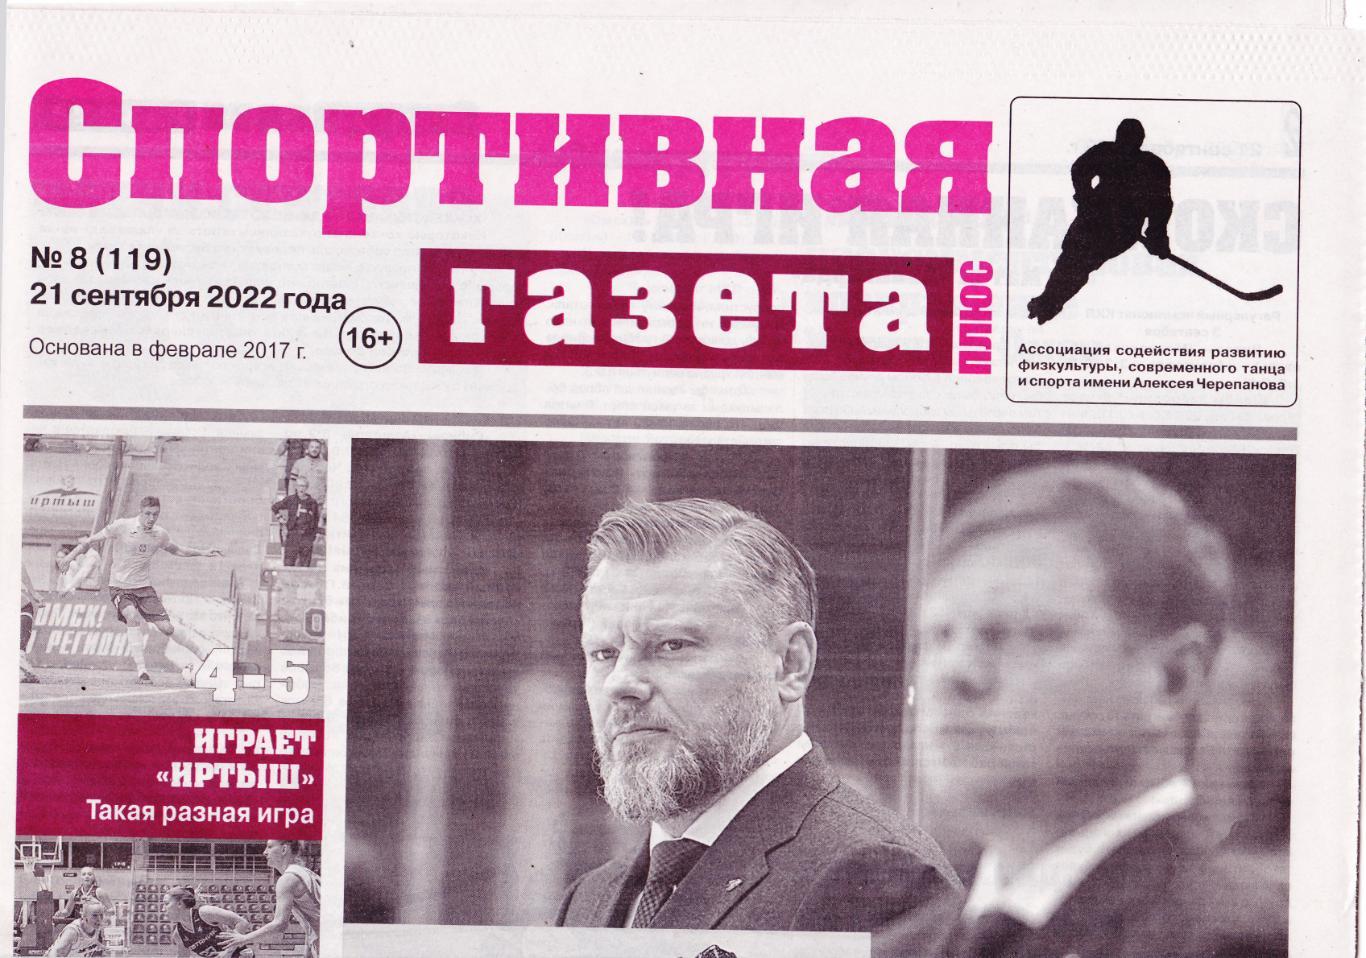 Омская спортивная газета 21.09.2022 (№8)